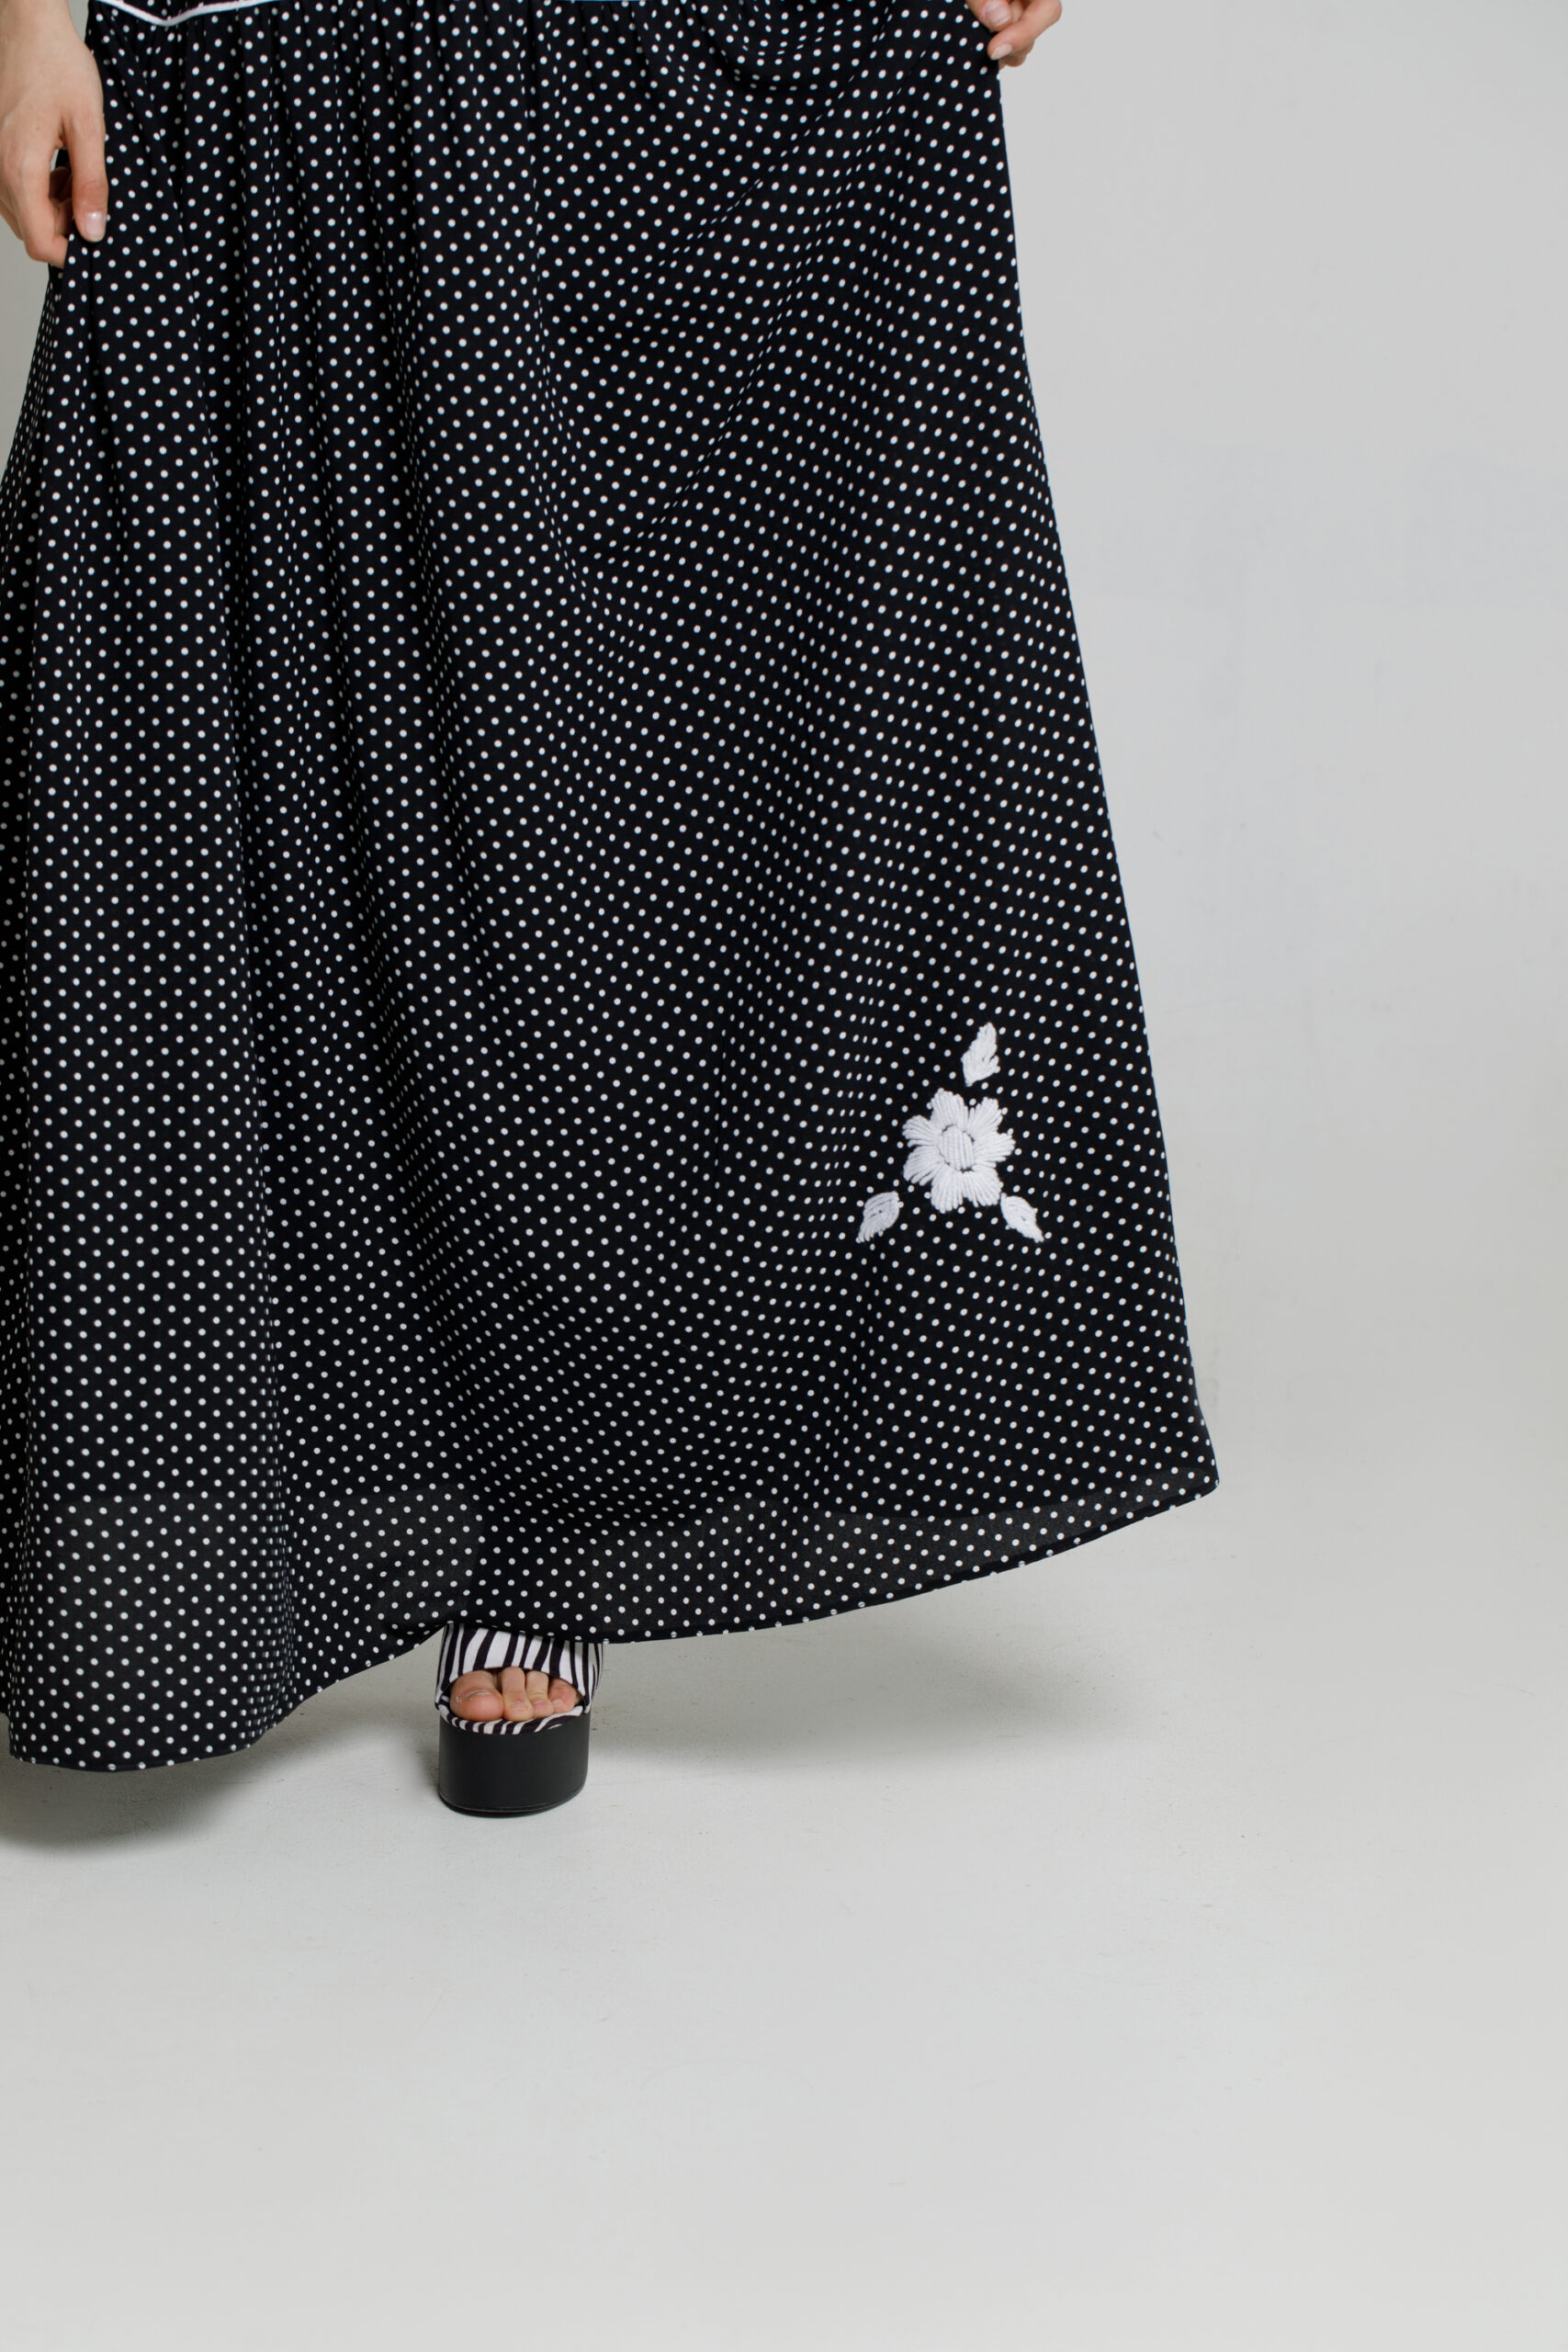 Rochie ARABELA lunga casual din viscoza neagra. Materiale naturale, design unicat, cu broderie si aplicatii handmade